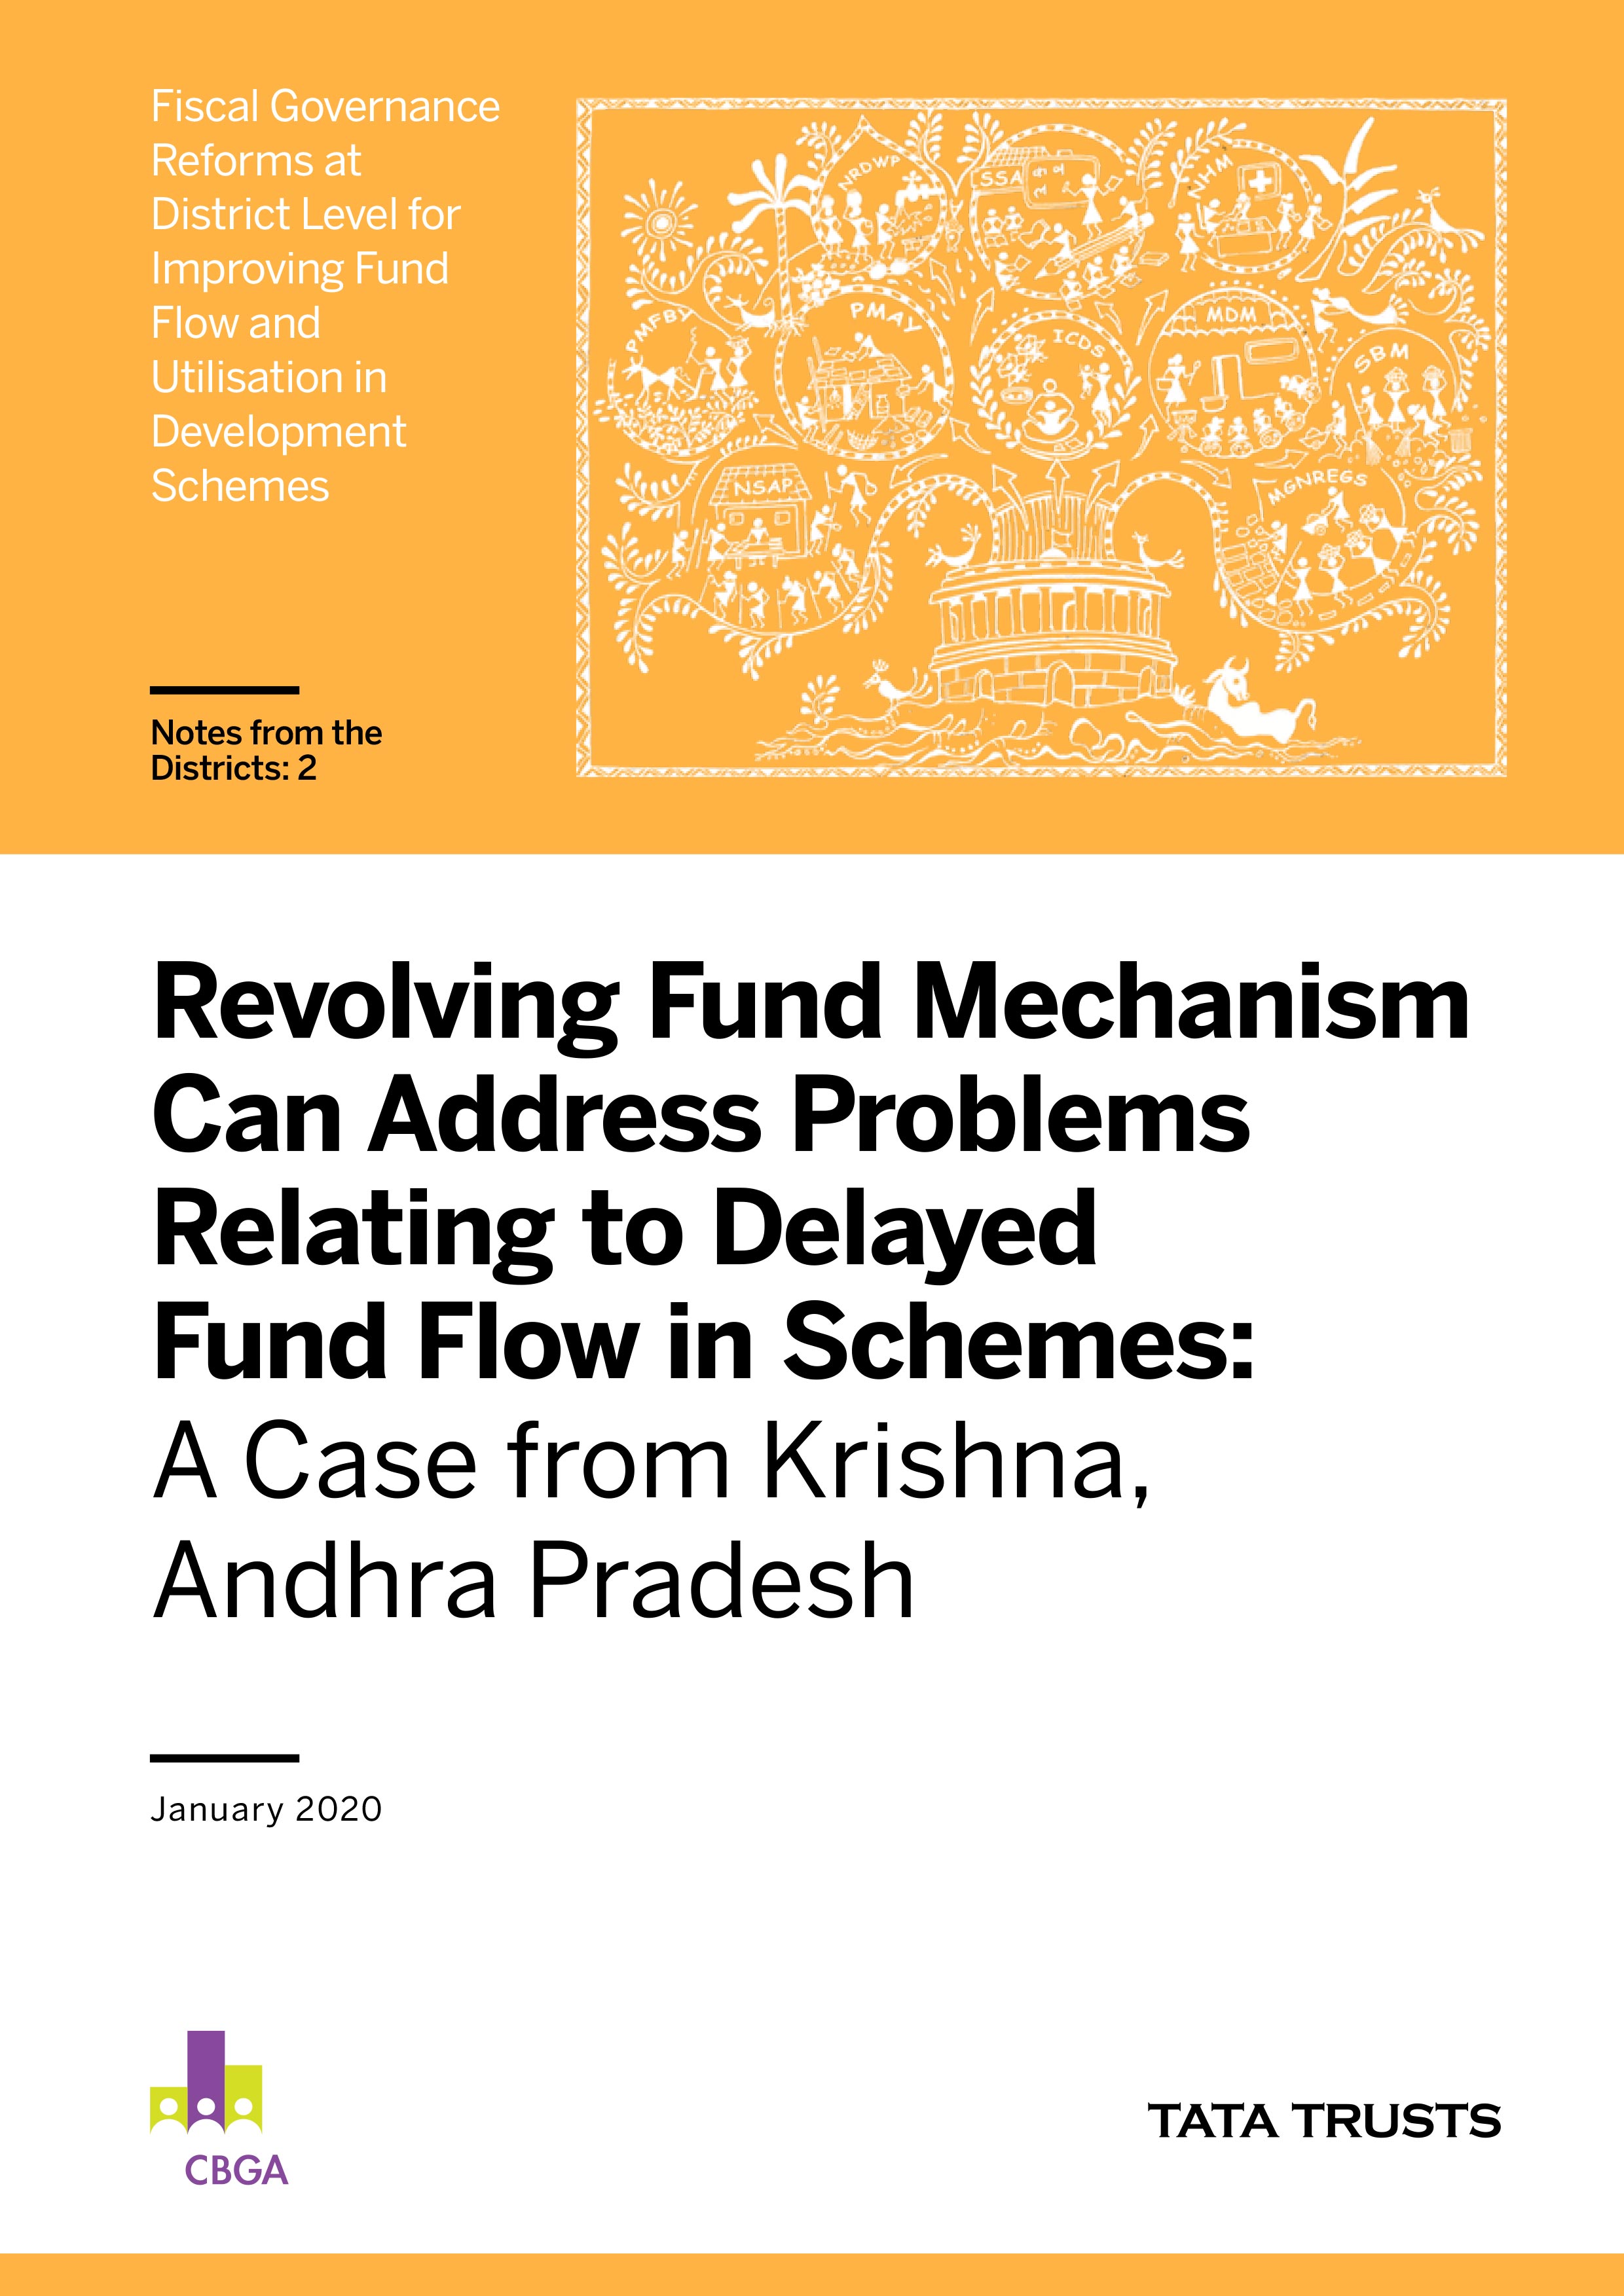 Revolving Fund to Address Delays in Fund Flow-Case of Krishna